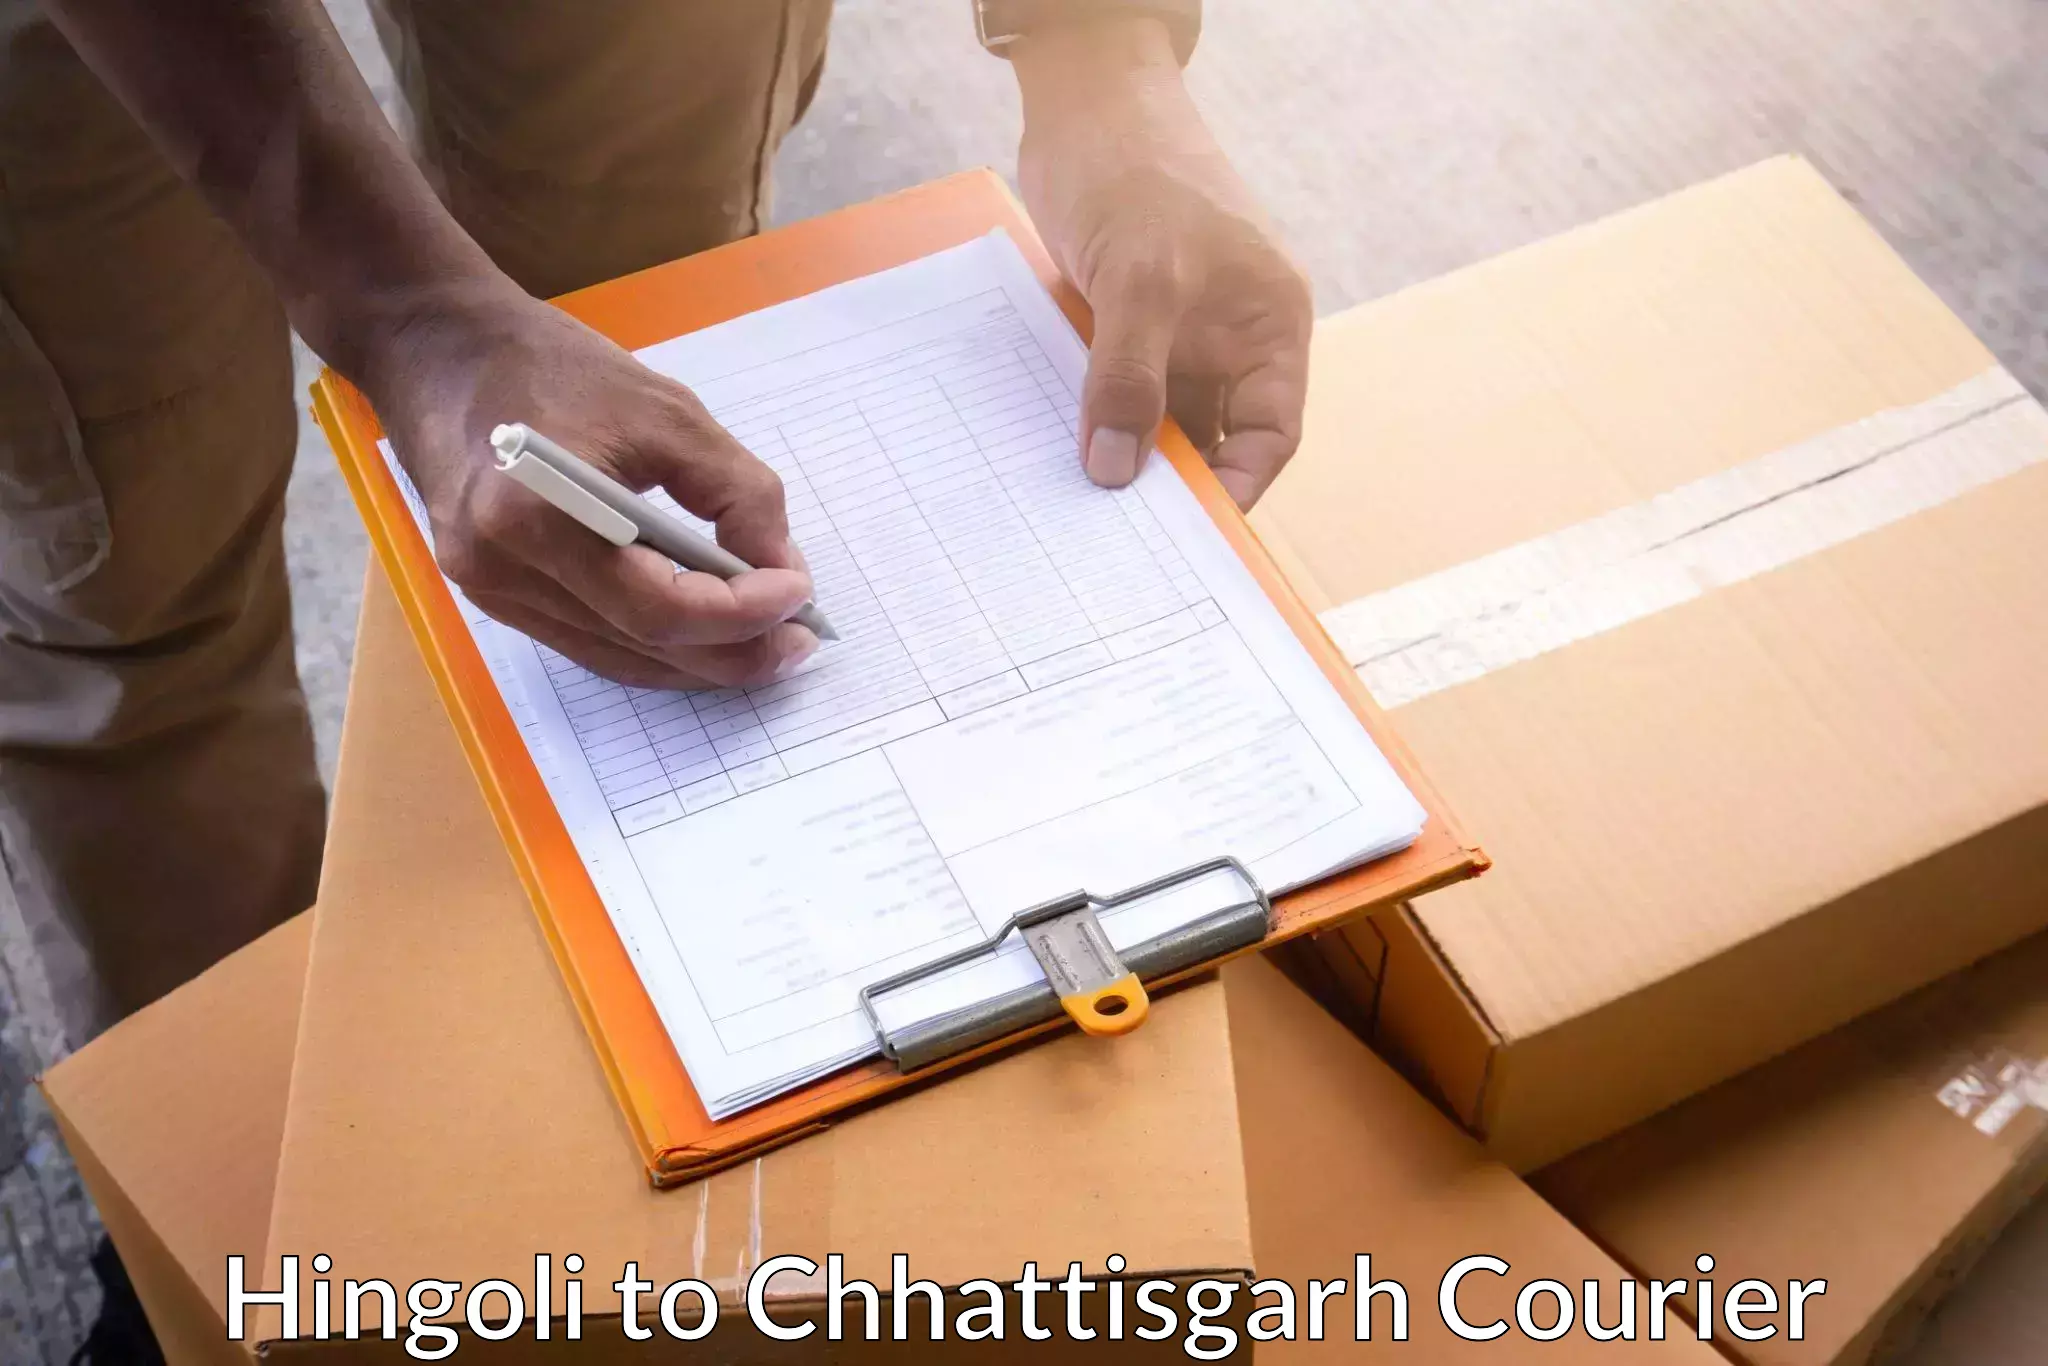 Courier service comparison Hingoli to Patna Chhattisgarh